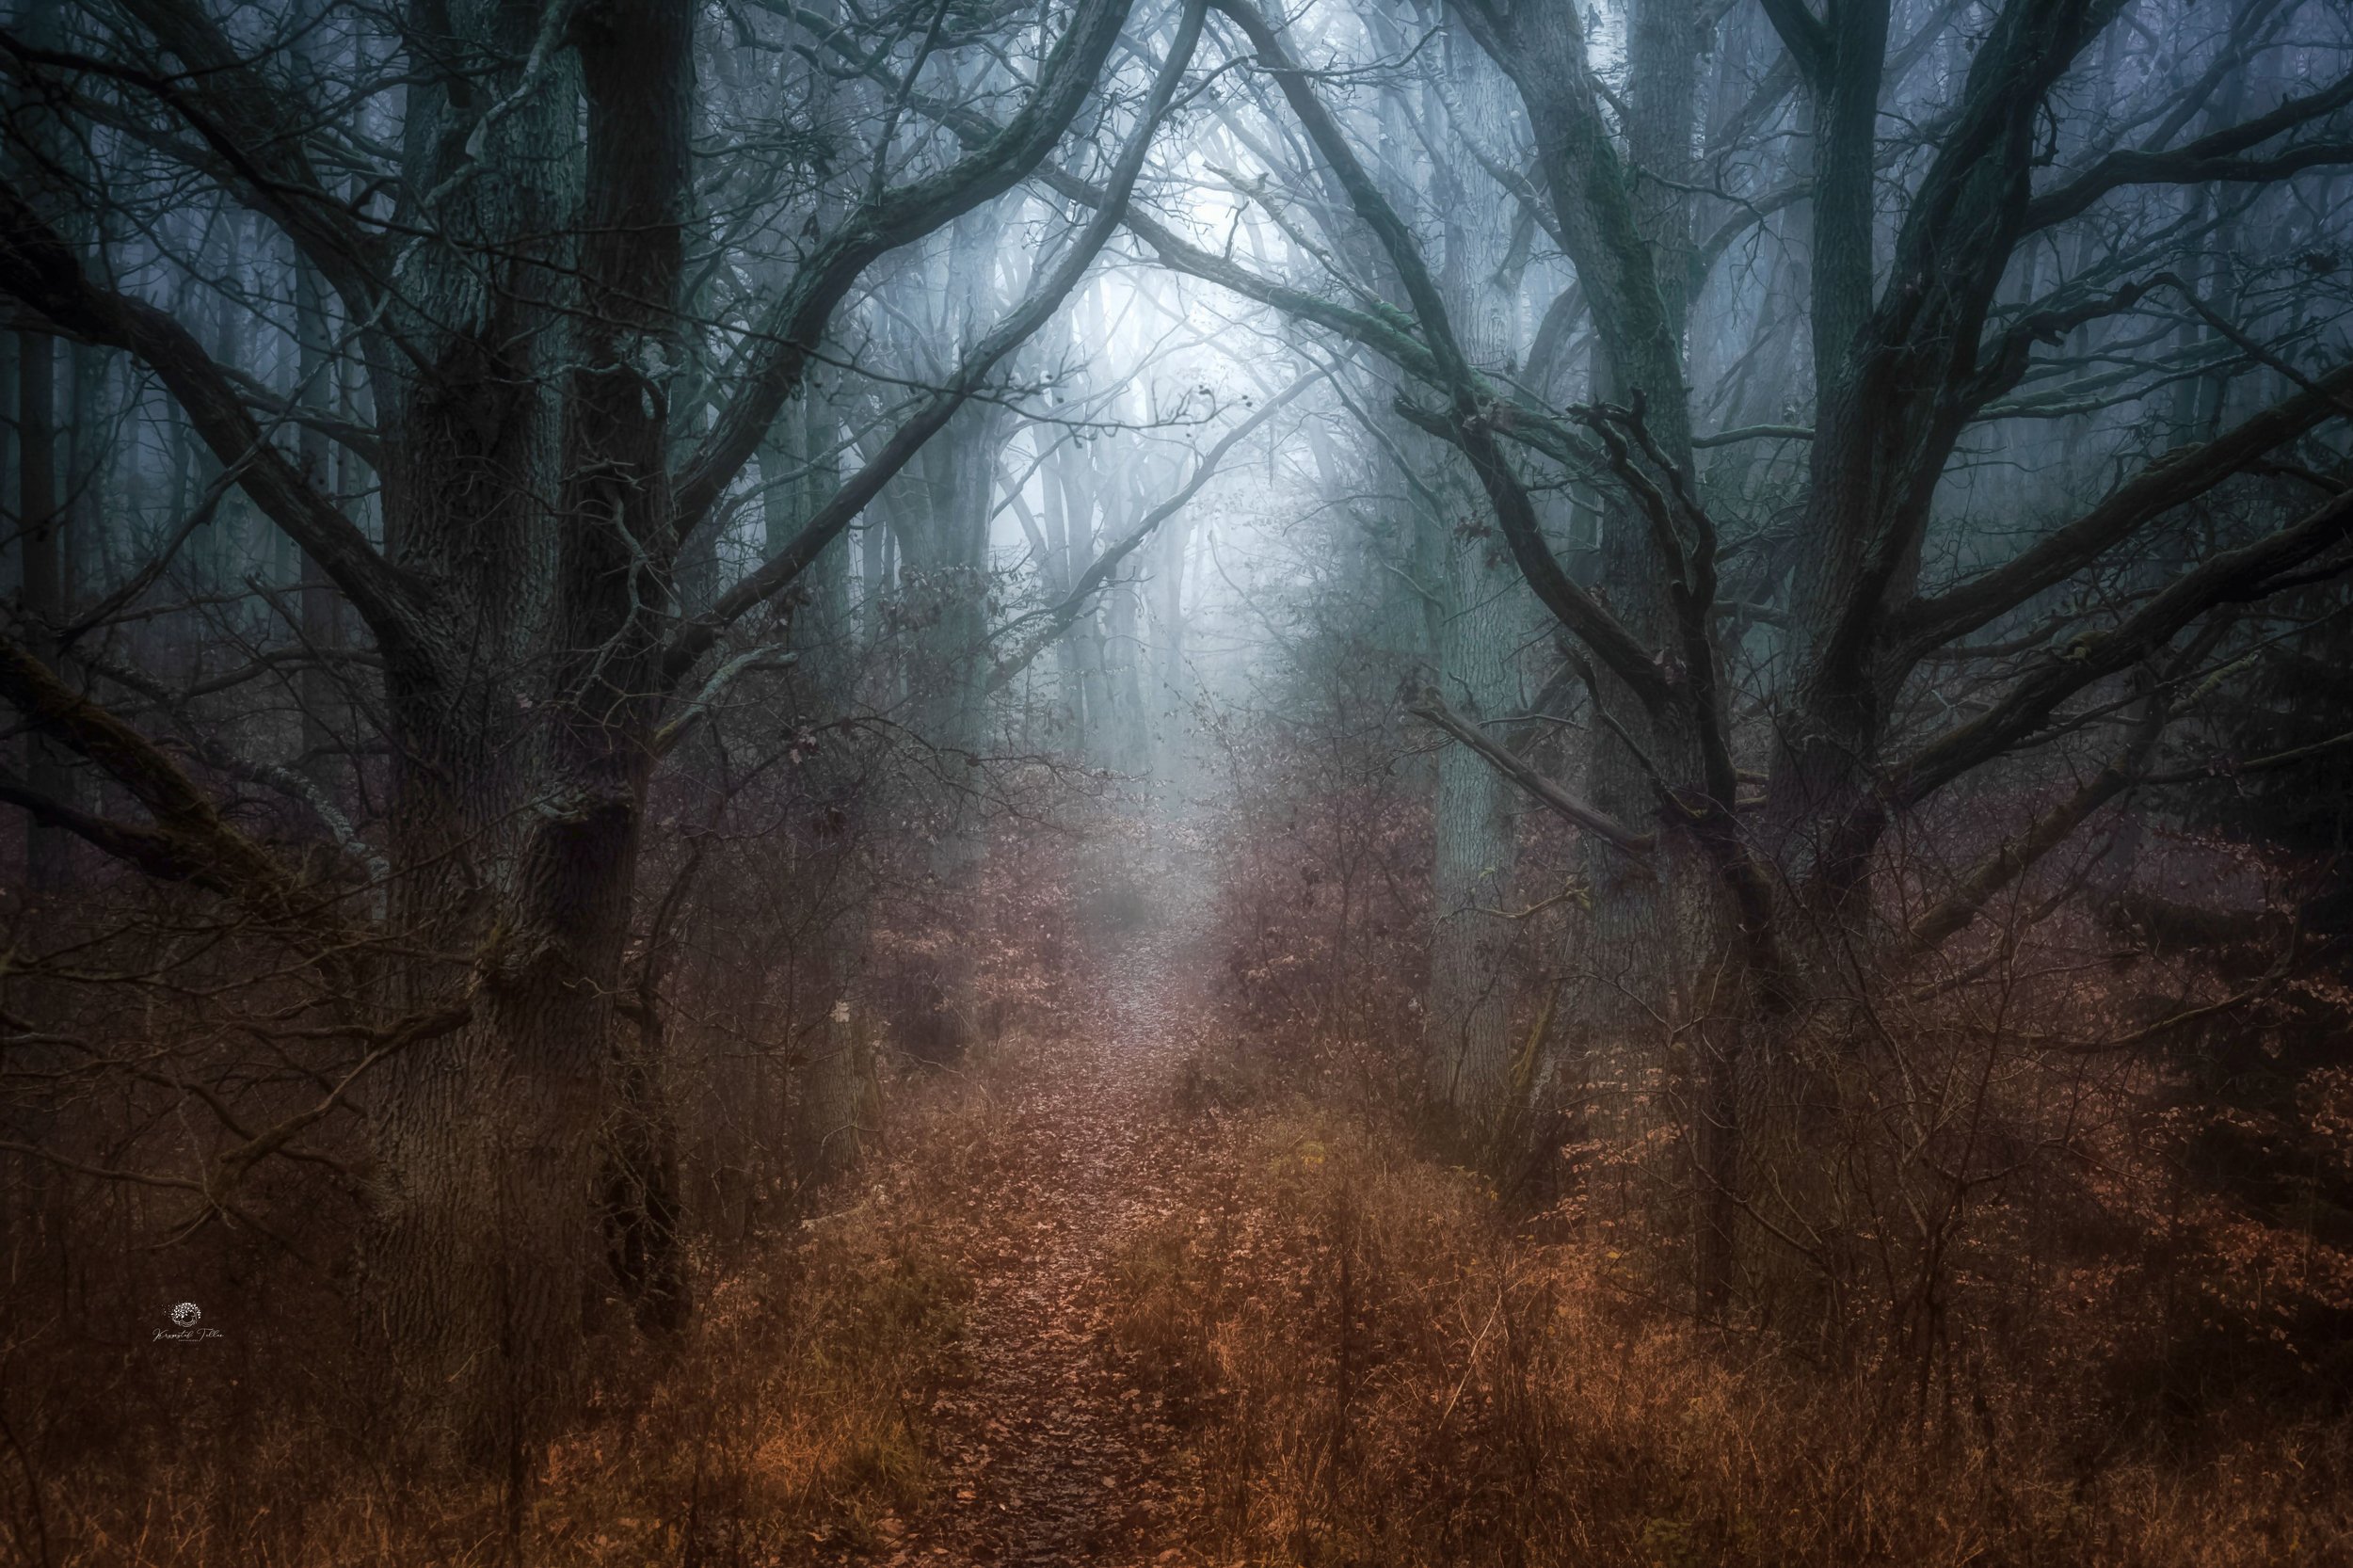  las, leśna droga, jesień, mgła, atmosfera, drzewa, liście jesienne, światło, nikon, świt, Krzysztof Tollas